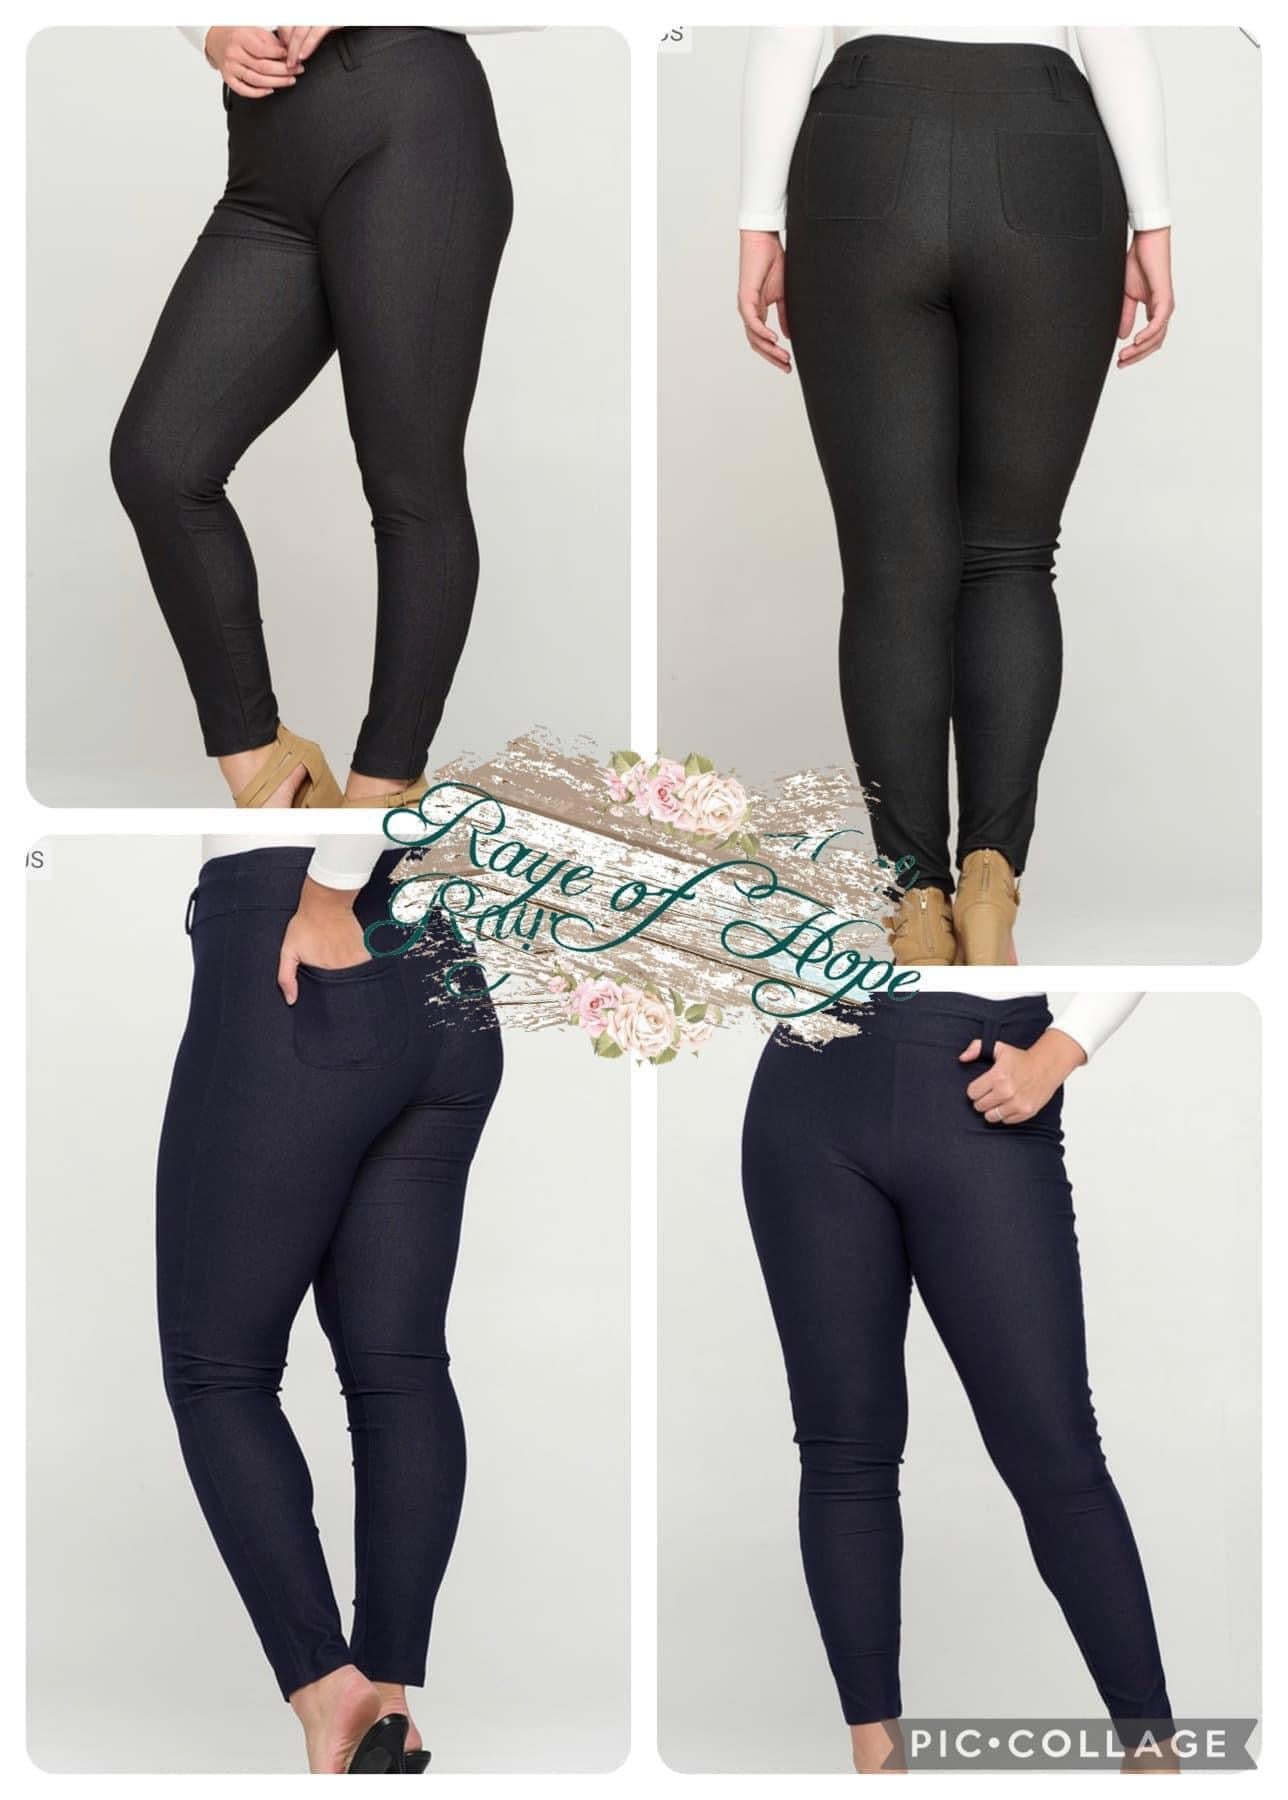 FLOSO®Ladies/Womens Jeggings with rear pocket (Jean Look Leggings) Black  size 12